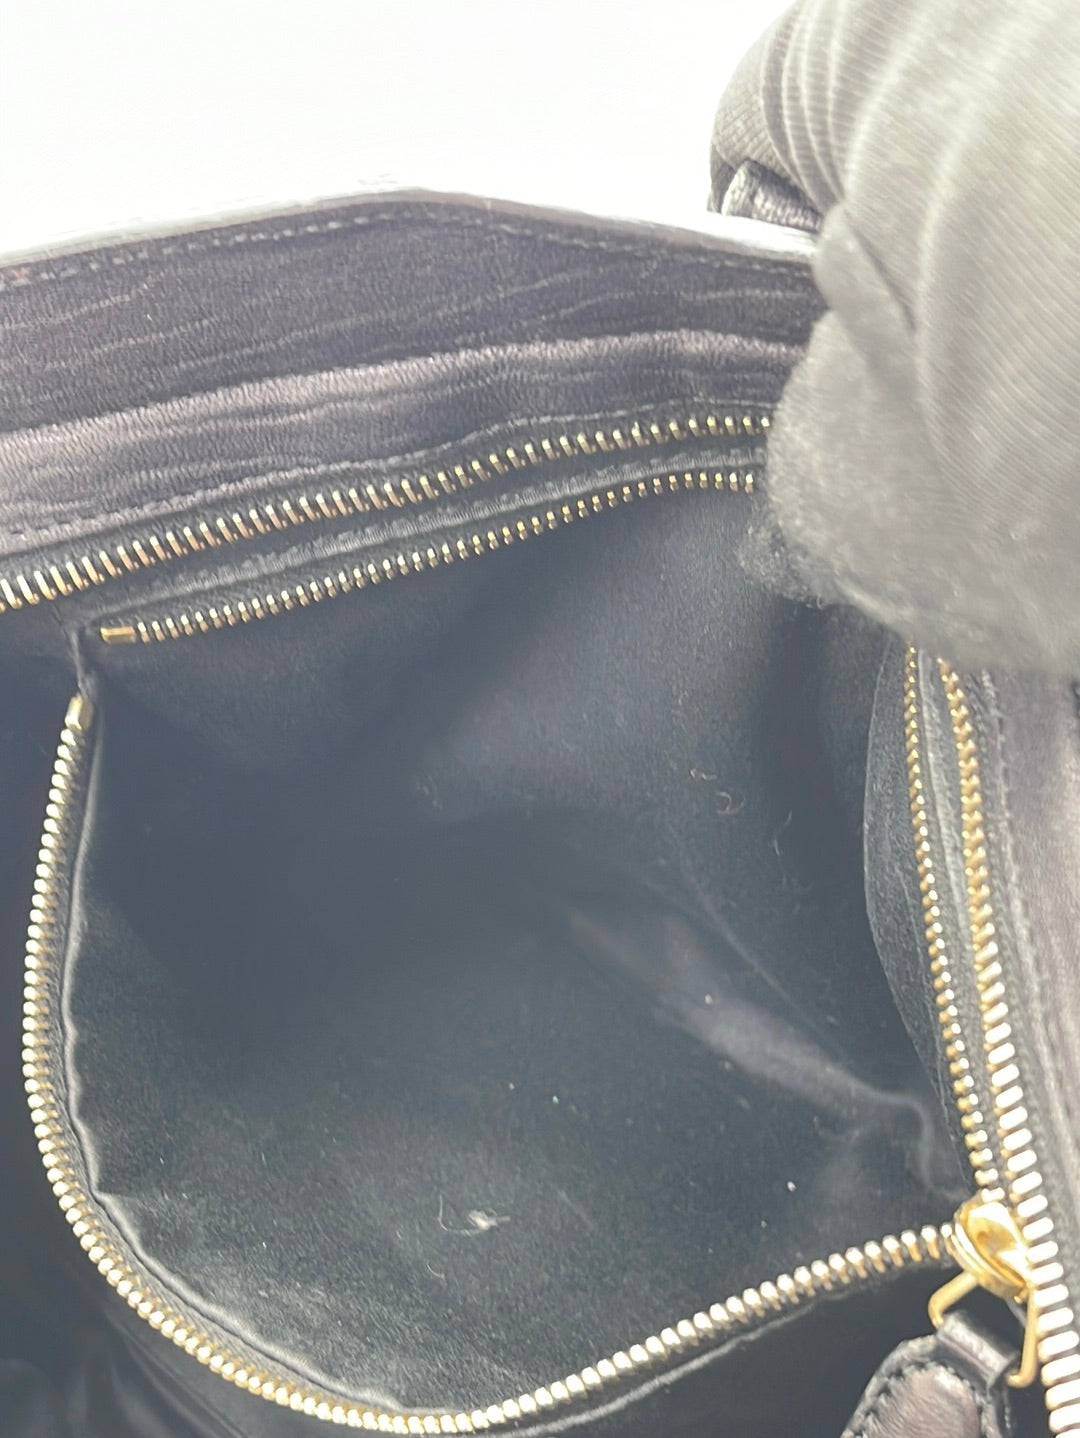 Saint Laurent - Authenticated Monogram Cabas Handbag - Leather Black Plain for Women, Very Good Condition